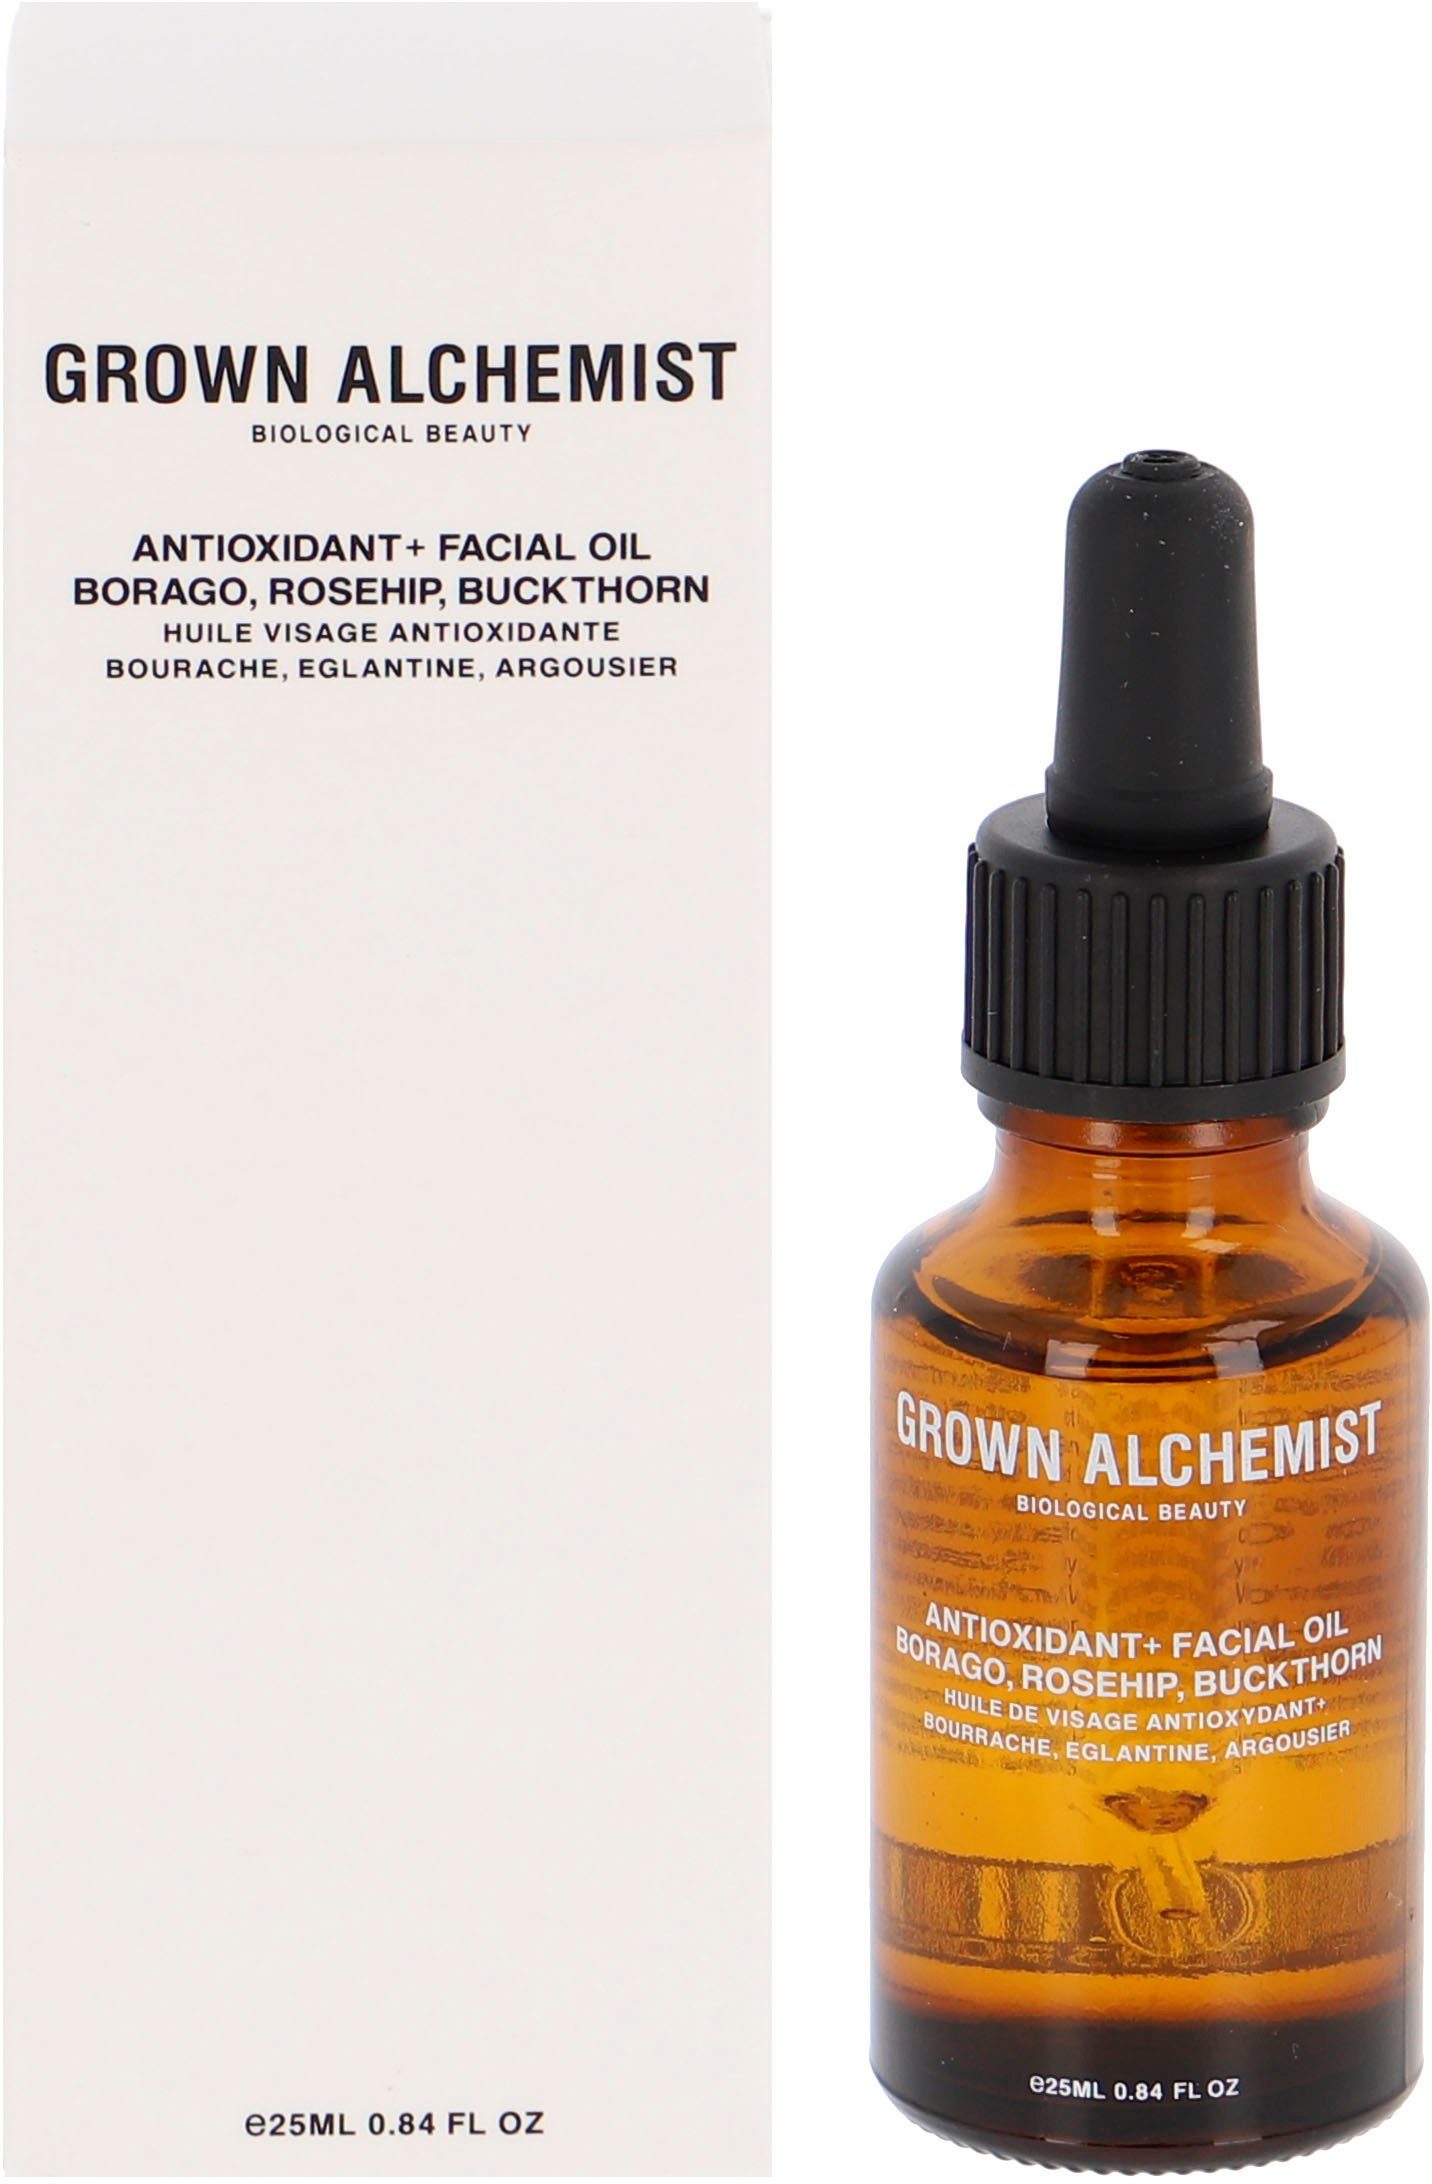 Rosehip, Buckthorn Oil, ALCHEMIST Anti-Oxidant+ Gesichtsöl Borago, GROWN Facial